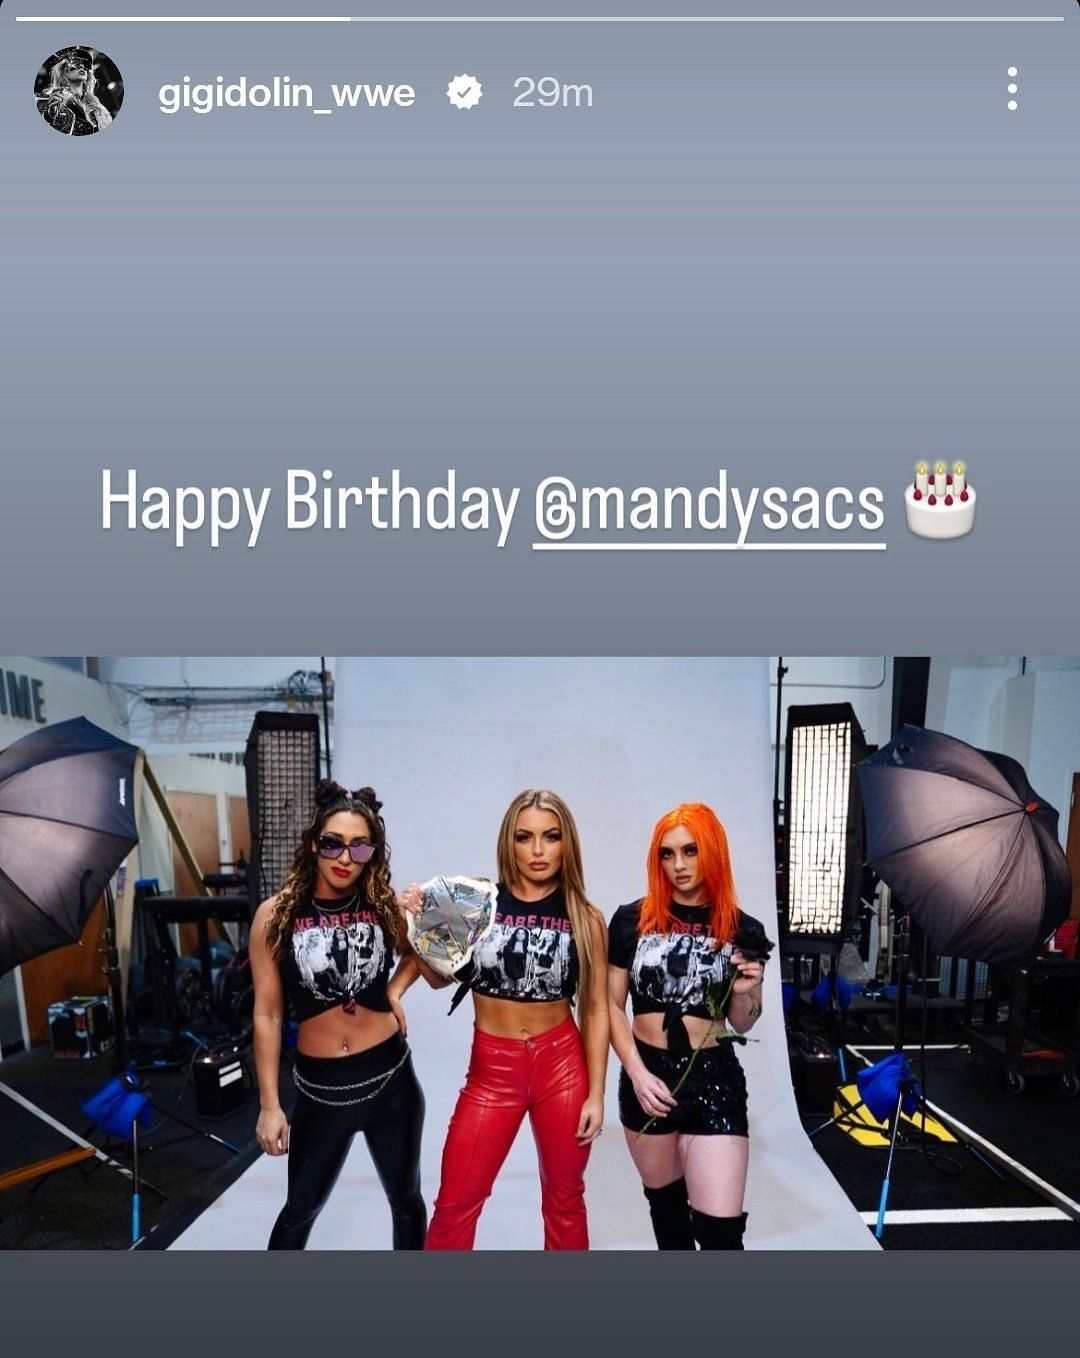 Gigi wishes Mandy a happy birthday